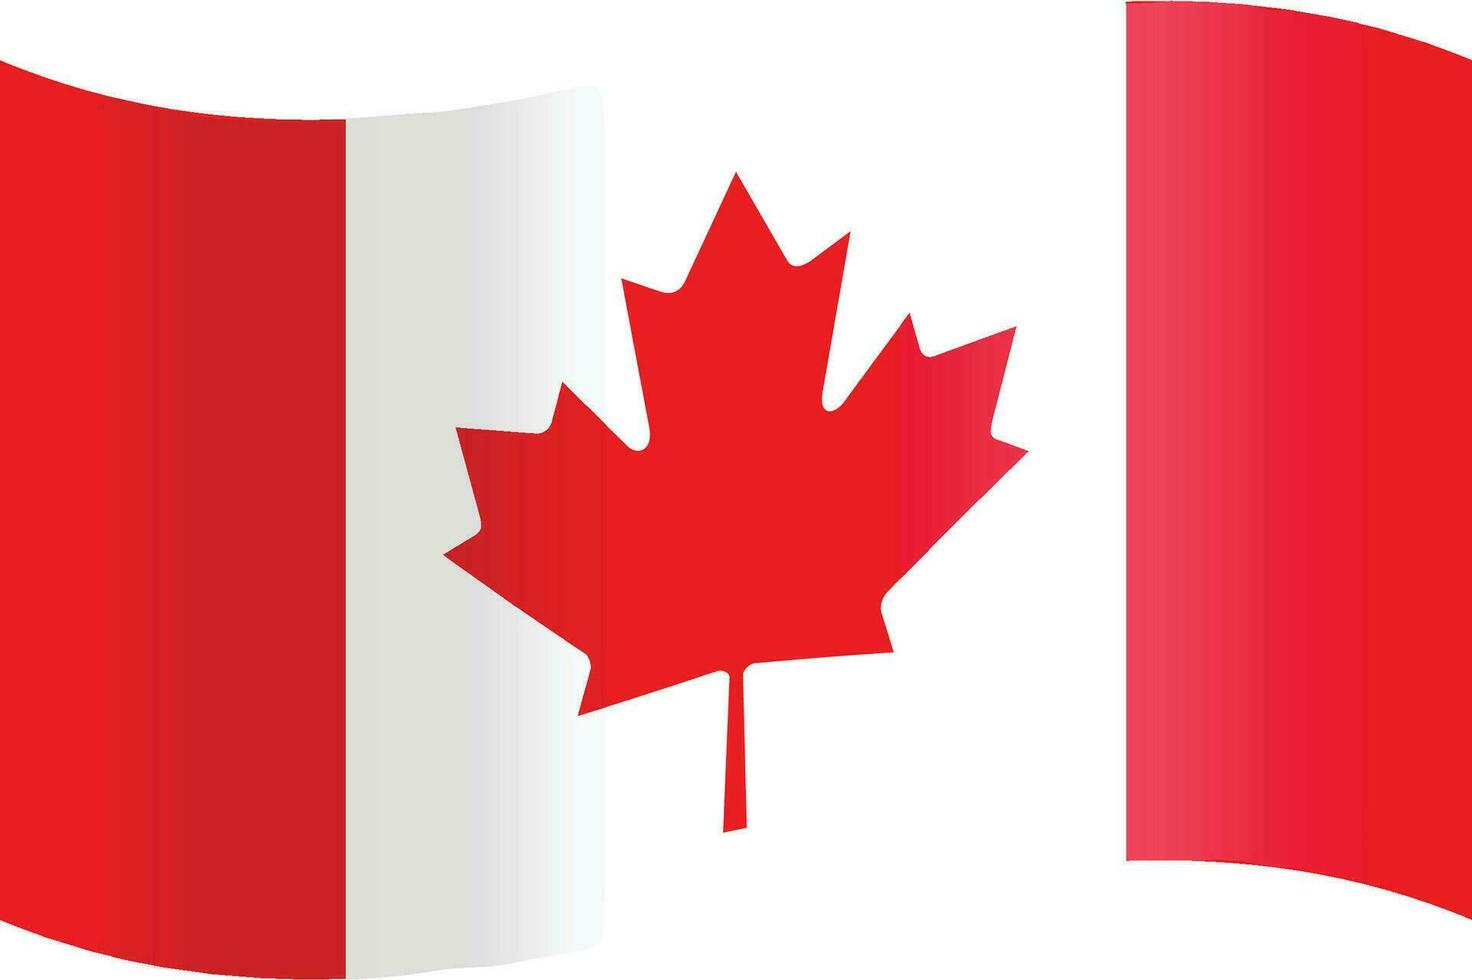 Illustration von das offiziell National Flagge von Kanada im Vektor form.